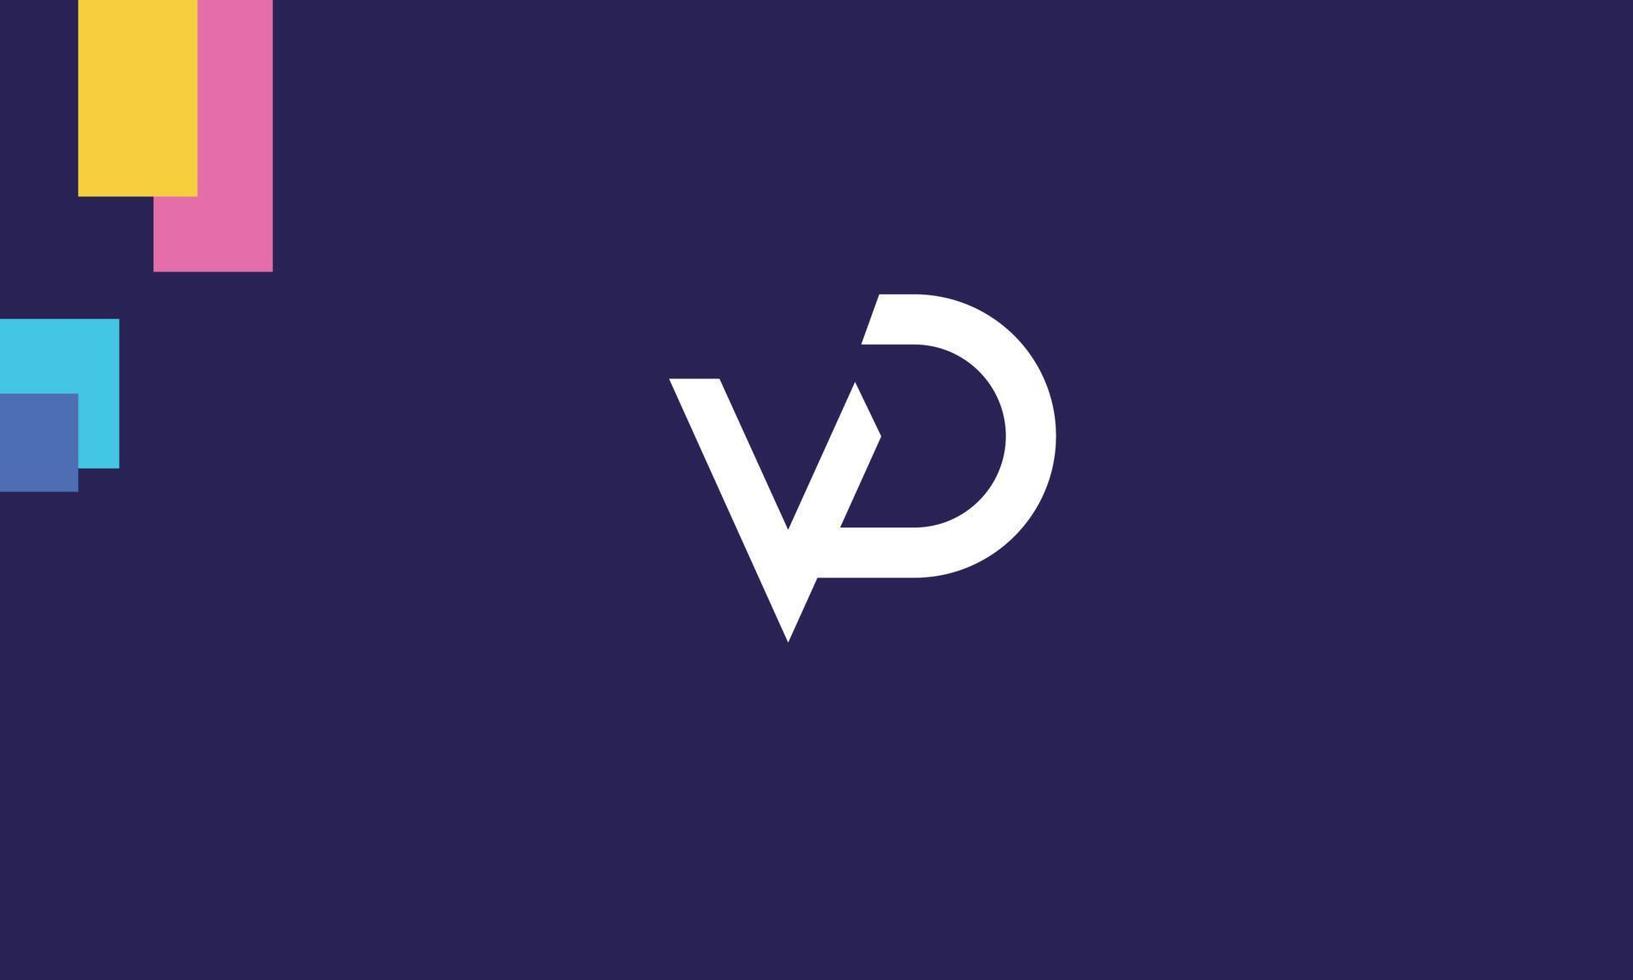 alfabeto letras iniciales monograma logo vd, dv, v y d vector